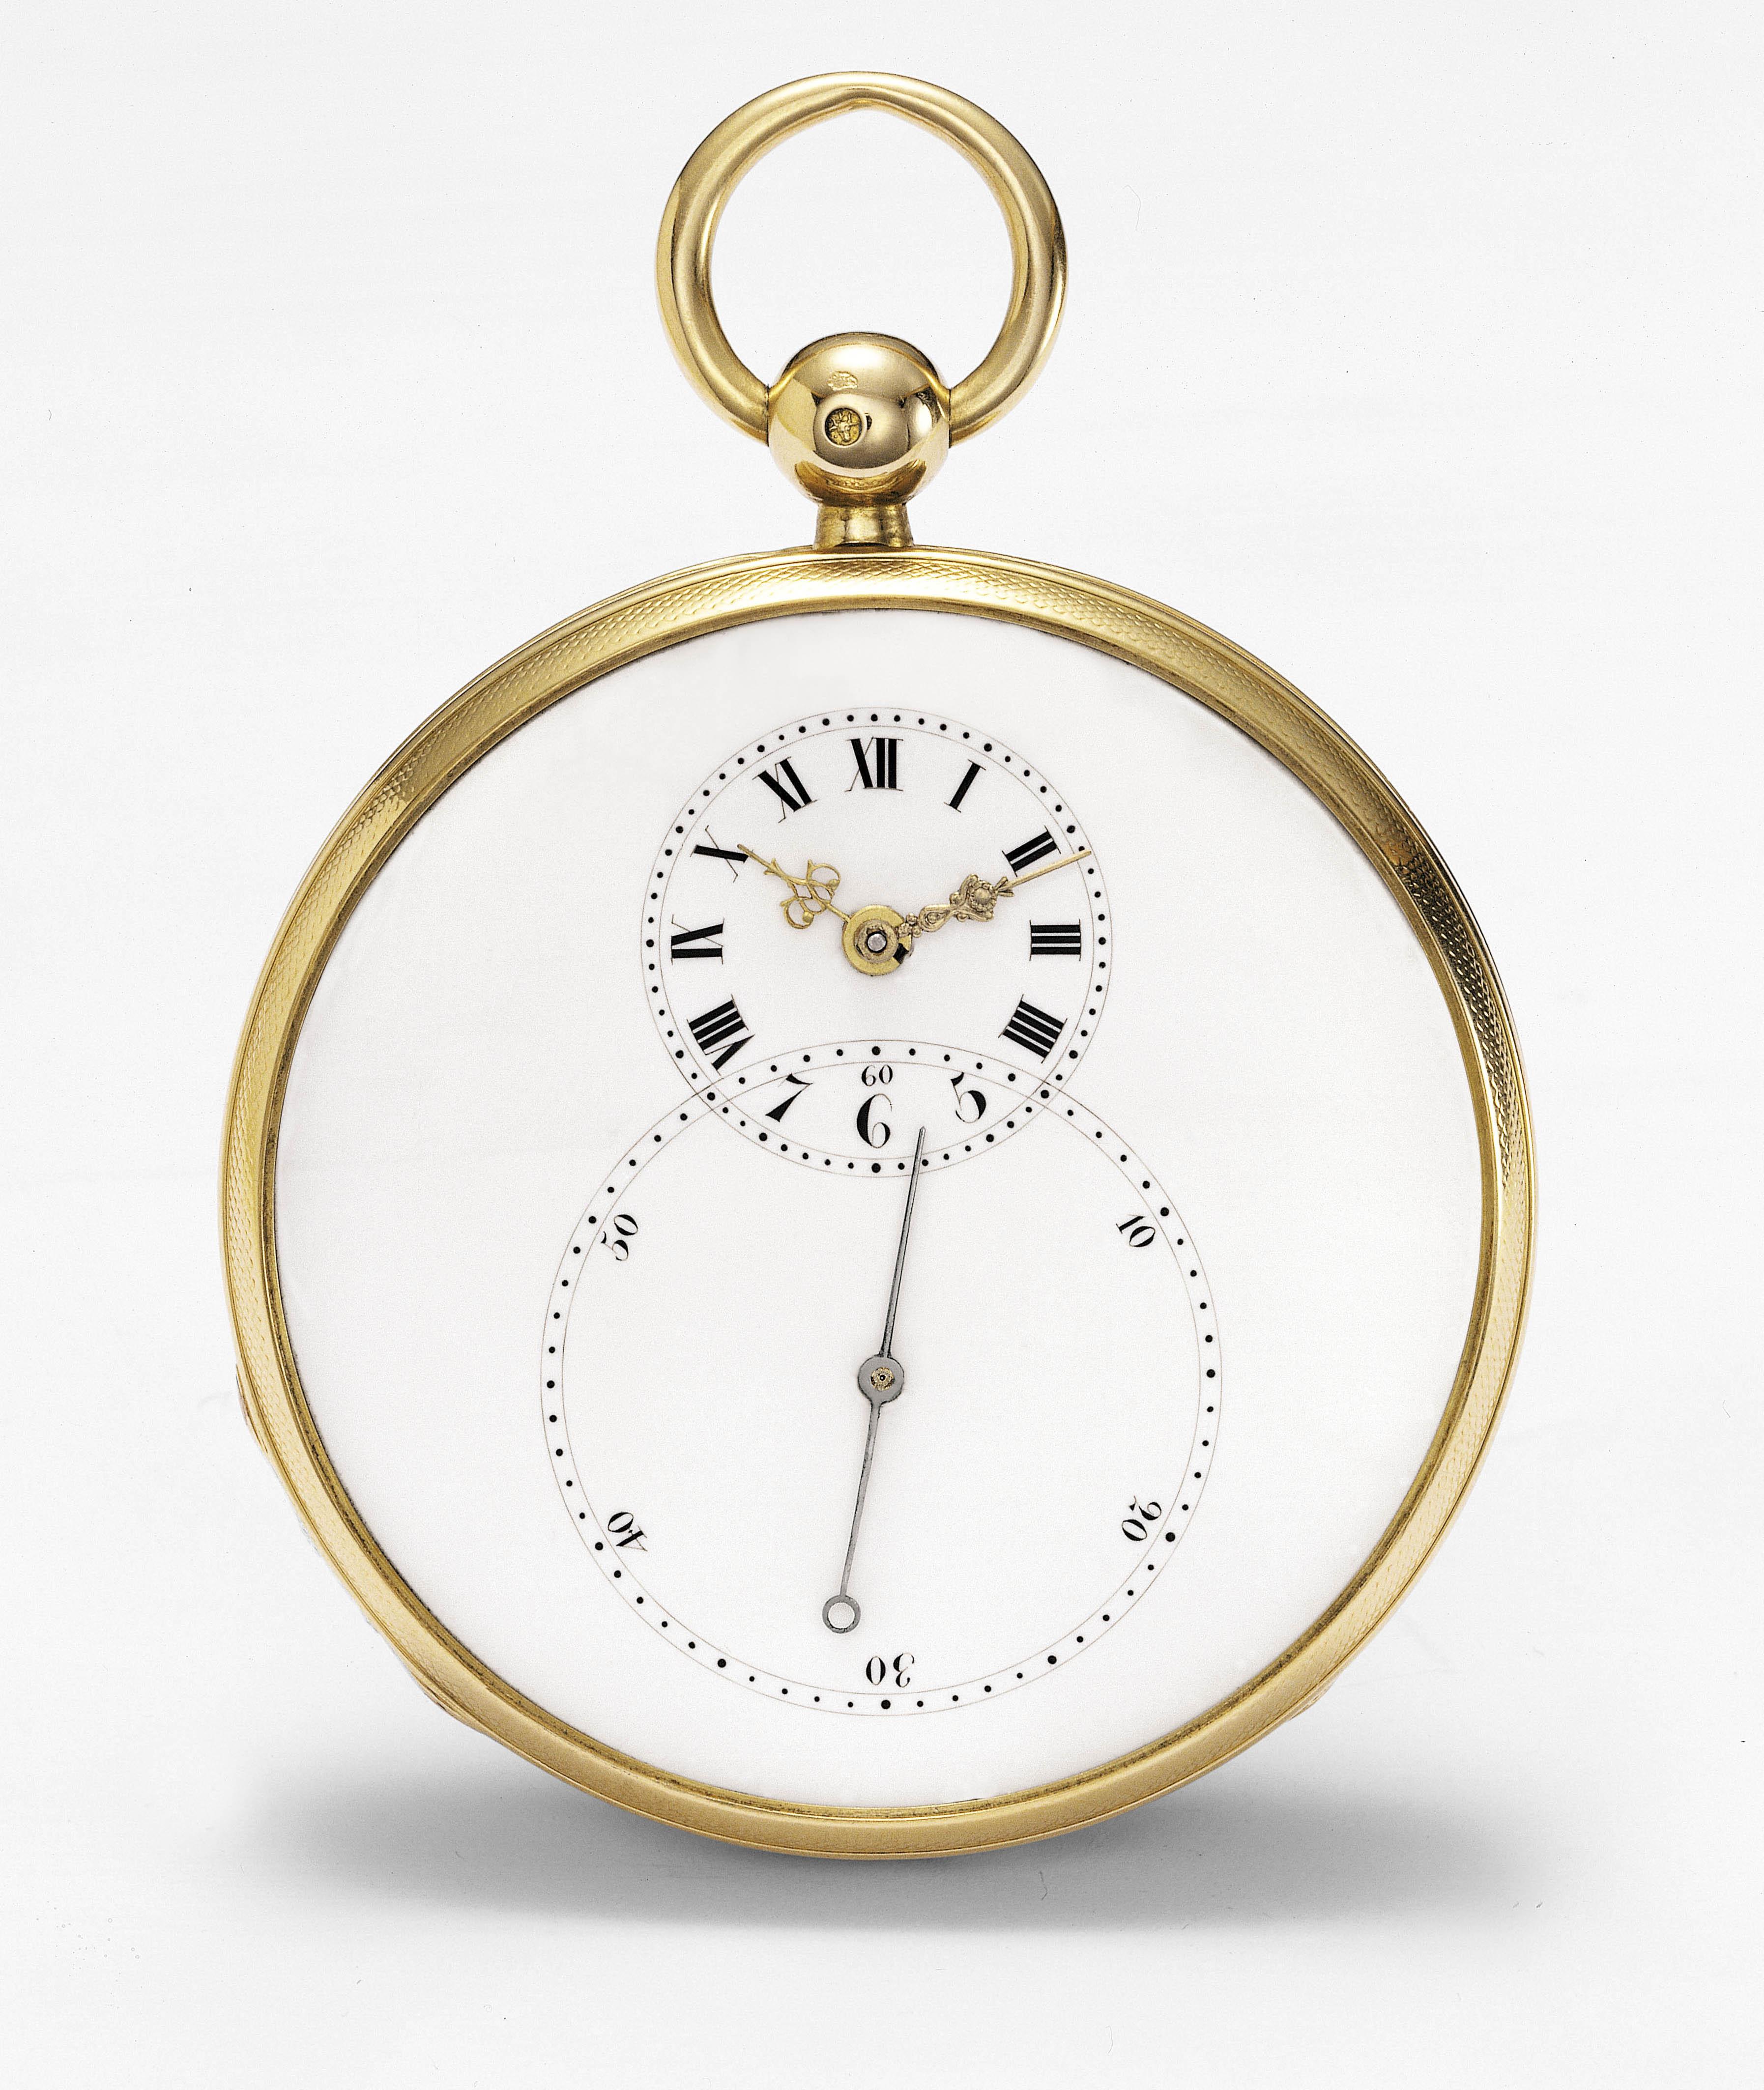 偏心小时及分钟盘怀表,配备大秒盘,约1785年由皮埃尔雅克德罗于拉夏德